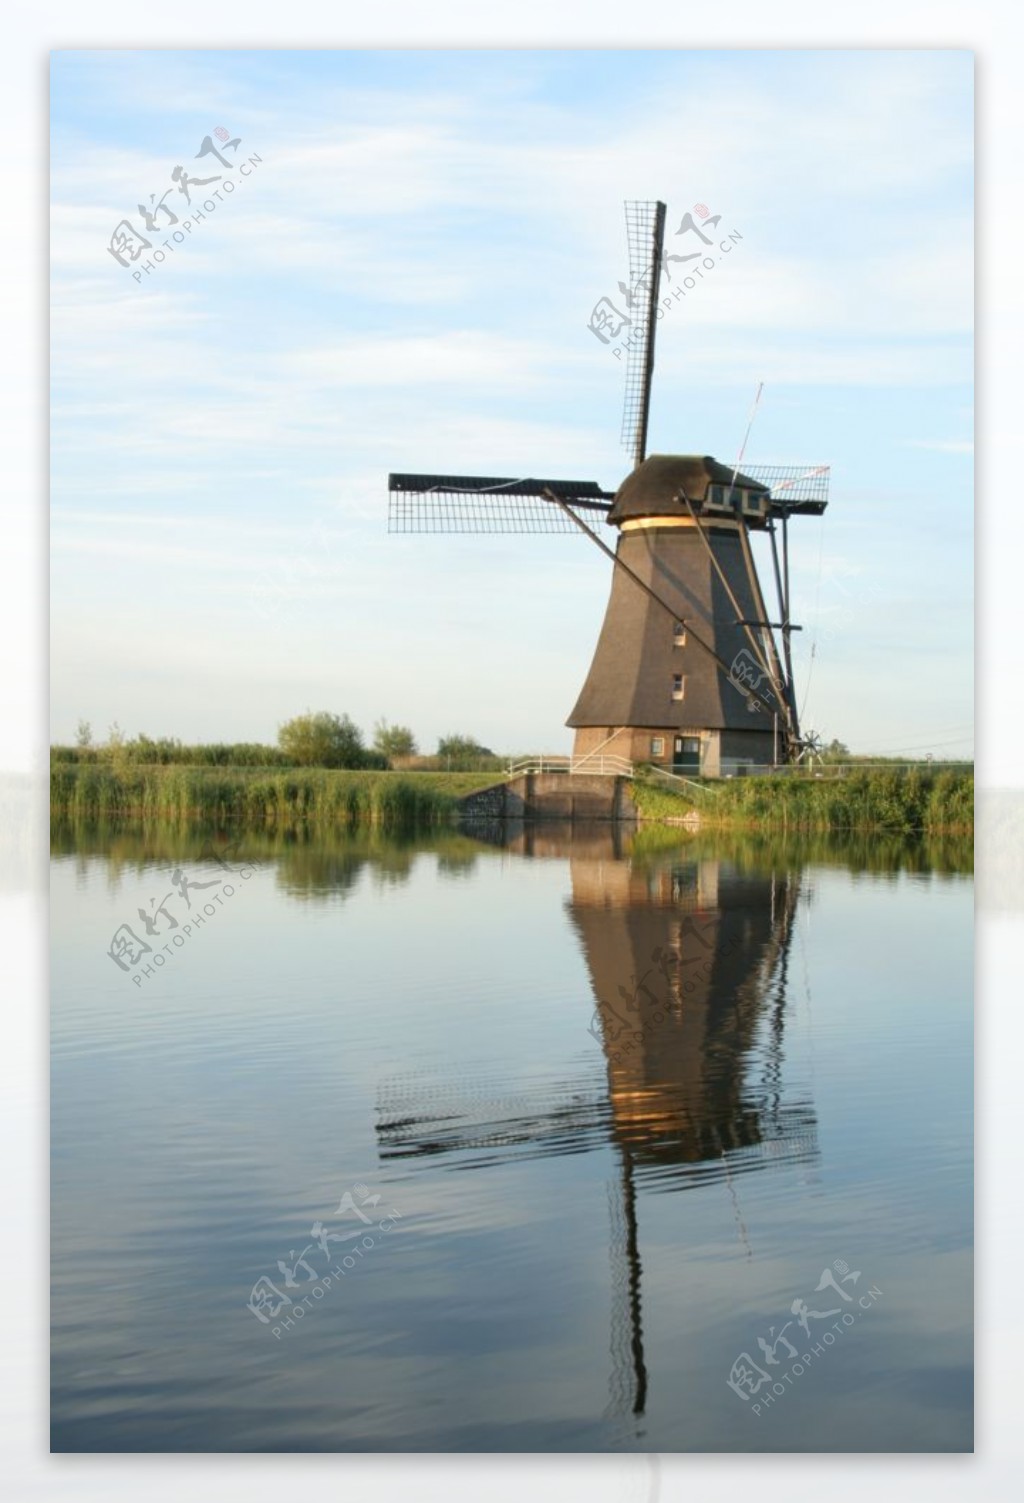 荷兰风车磨坊建筑景观